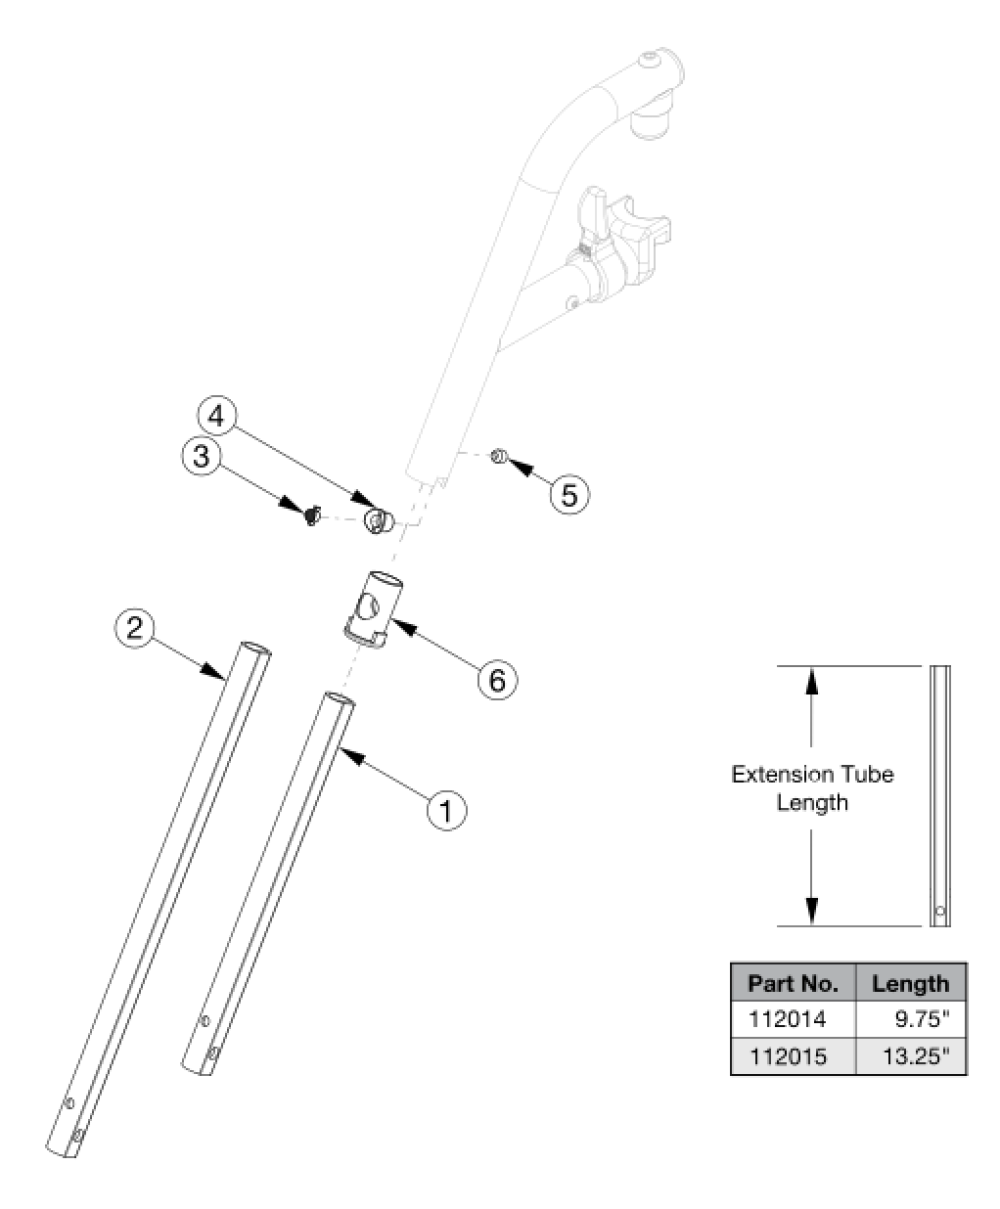 Catalyst E Hanger Extension Tubes parts diagram